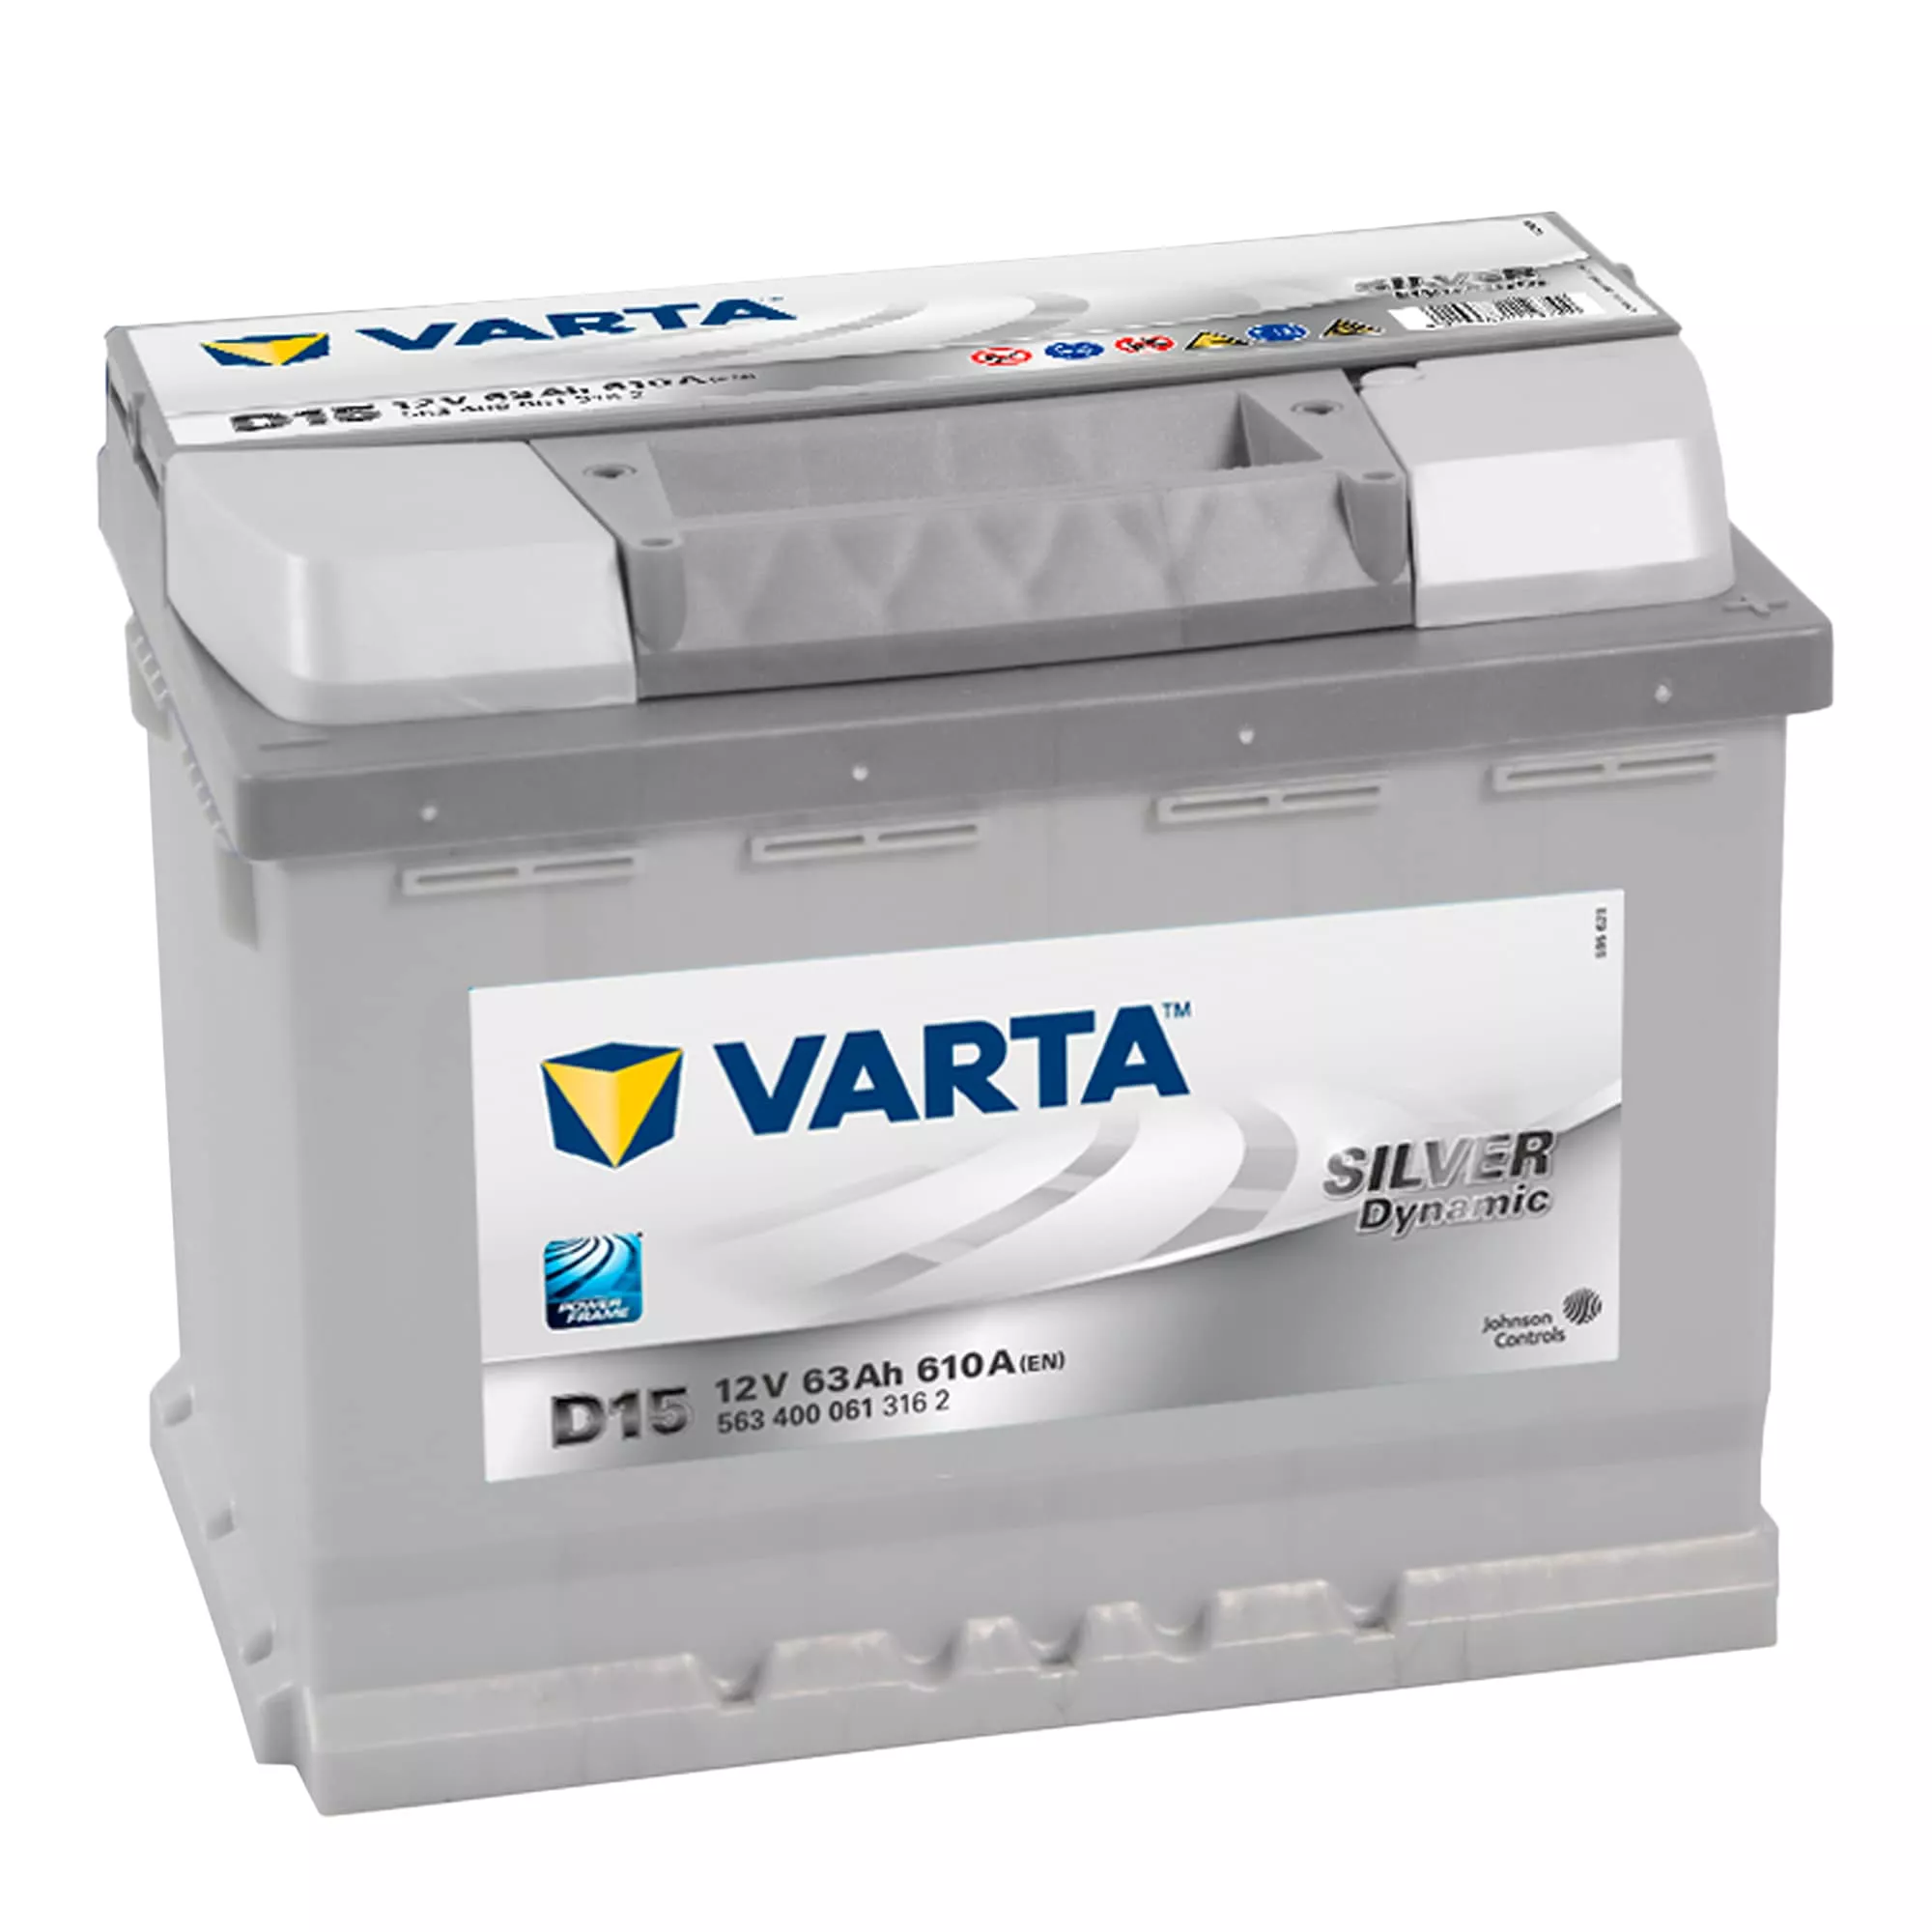 Автомобильный аккумулятор VARTA 6CT-63 АзЕ 563400061 Silver Dynamic (D15)